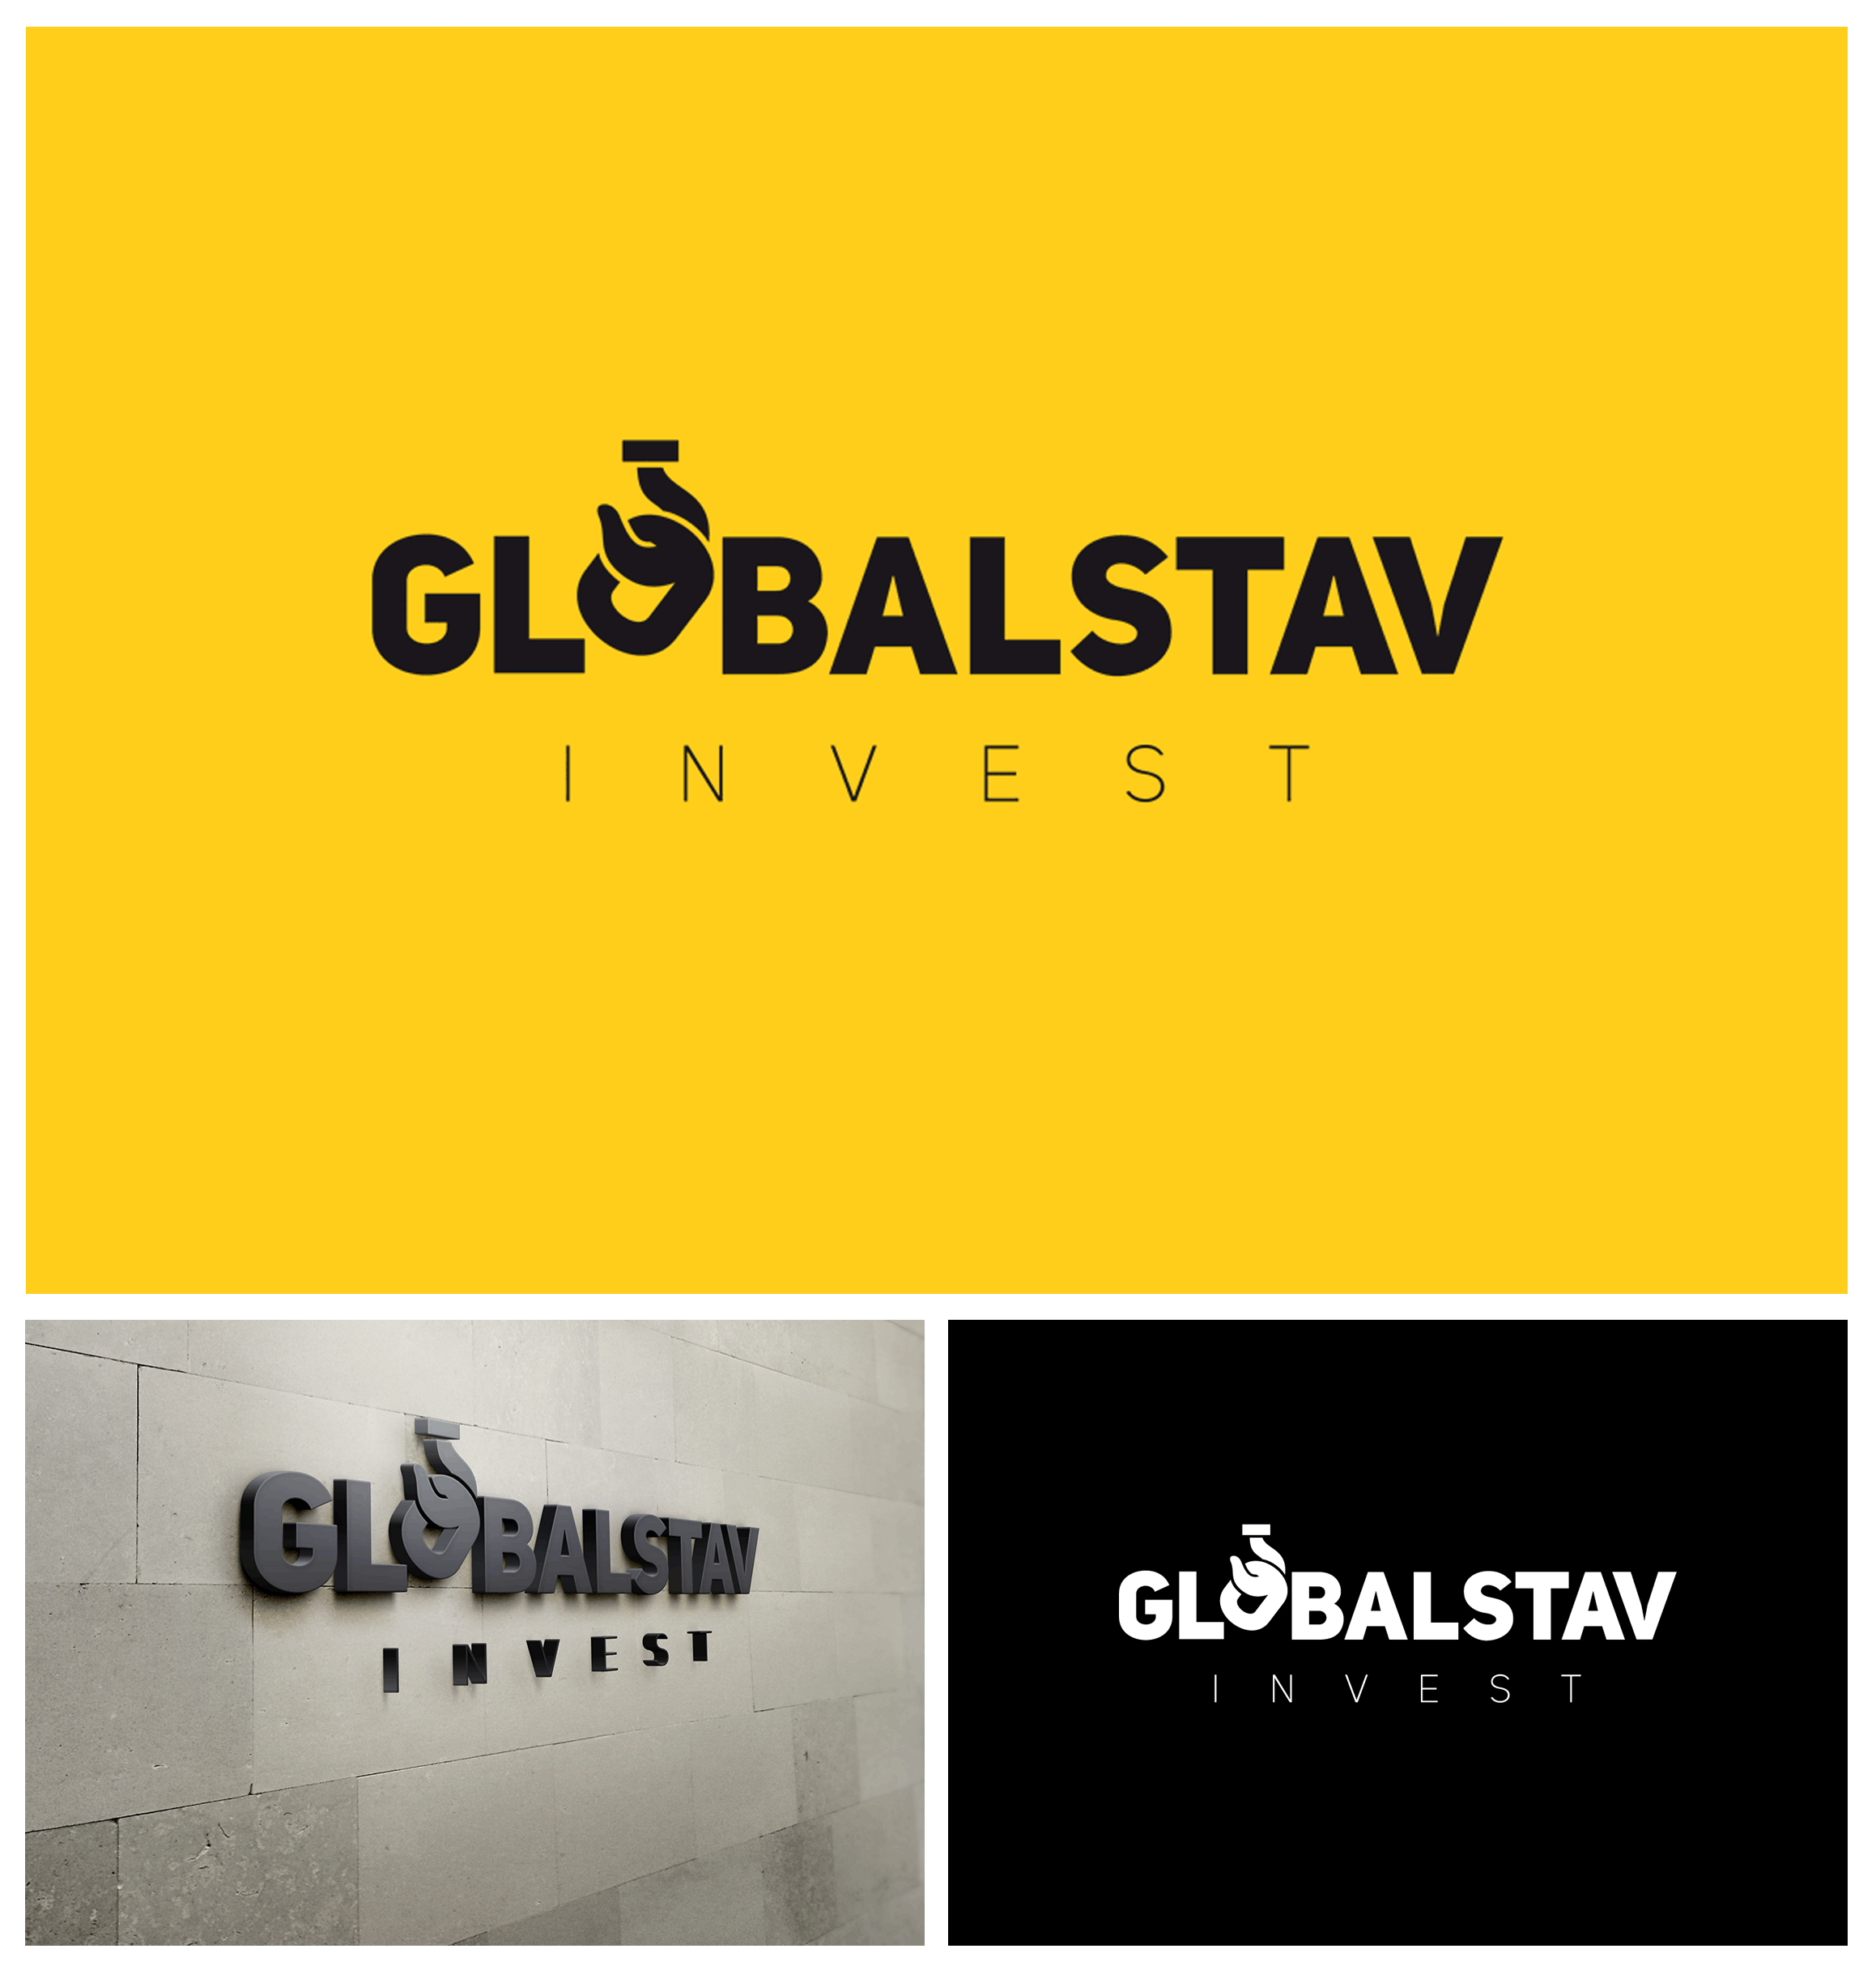 logo-globalstav-invest